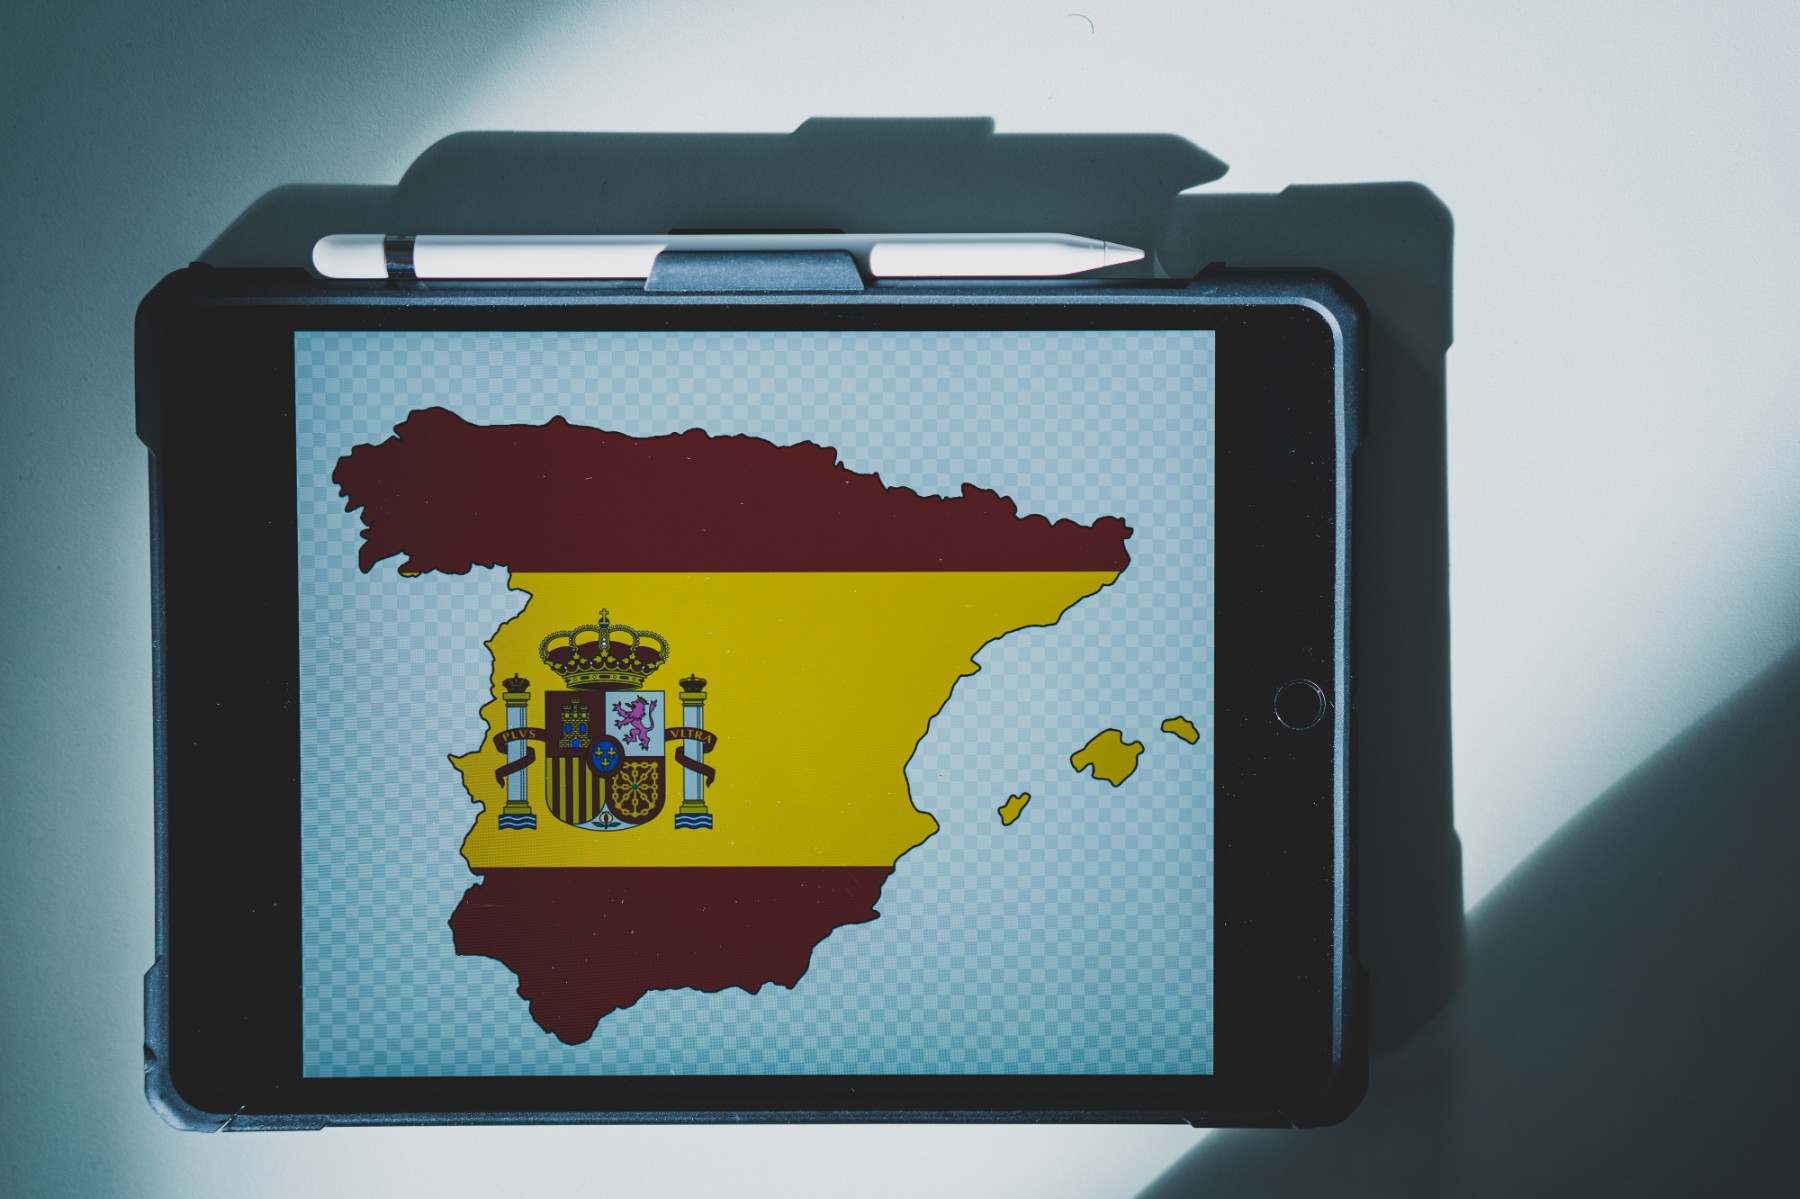 Das iPad als Unterrichtswerkzeug im Fach Spanisch